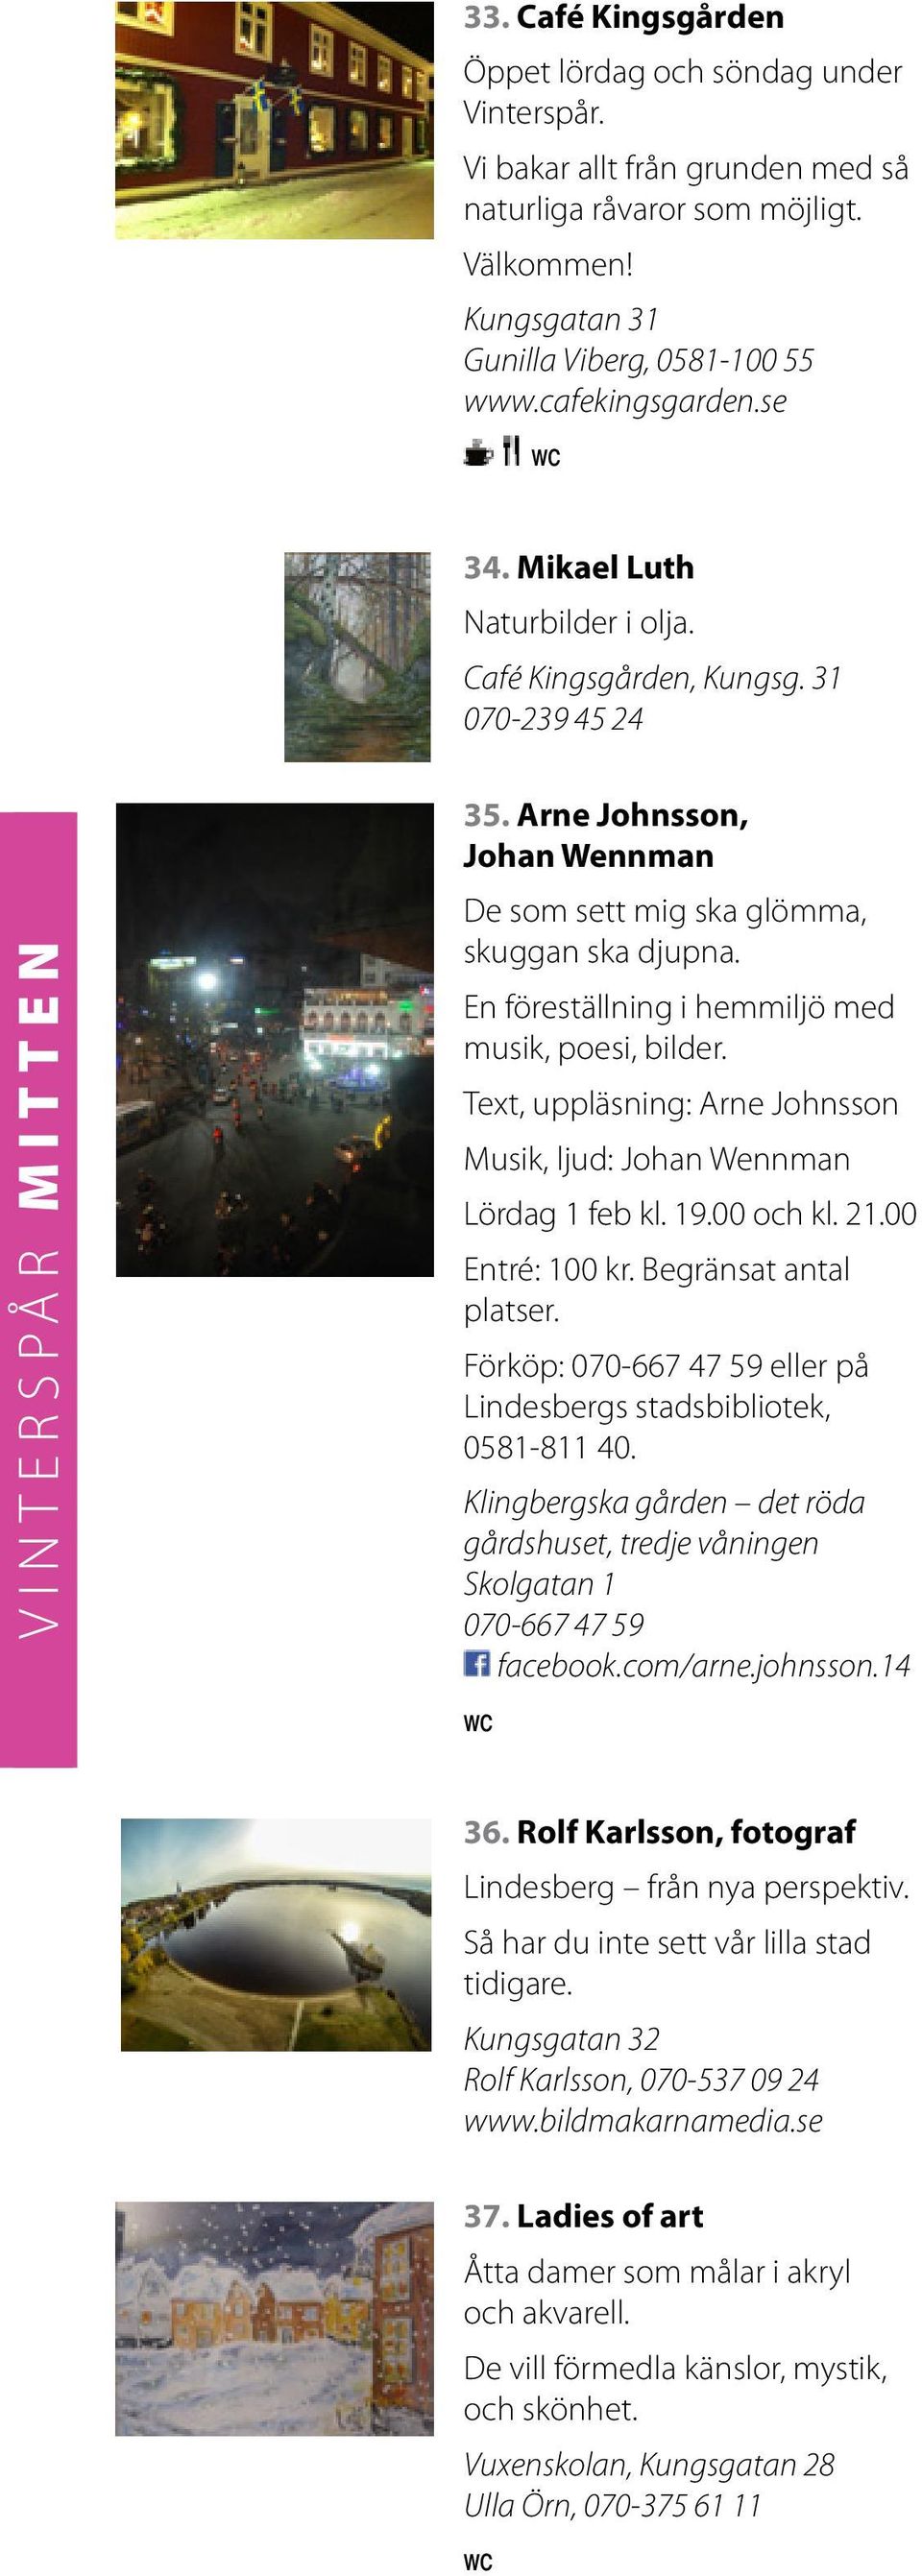 En föreställning i hemmiljö med musik, poesi, bilder. Text, uppläsning: Arne Johnsson Musik, ljud: Johan Wennman Lördag 1 feb kl. 19.00 och kl. 21.00 Entré: 100 kr. Begränsat antal platser.